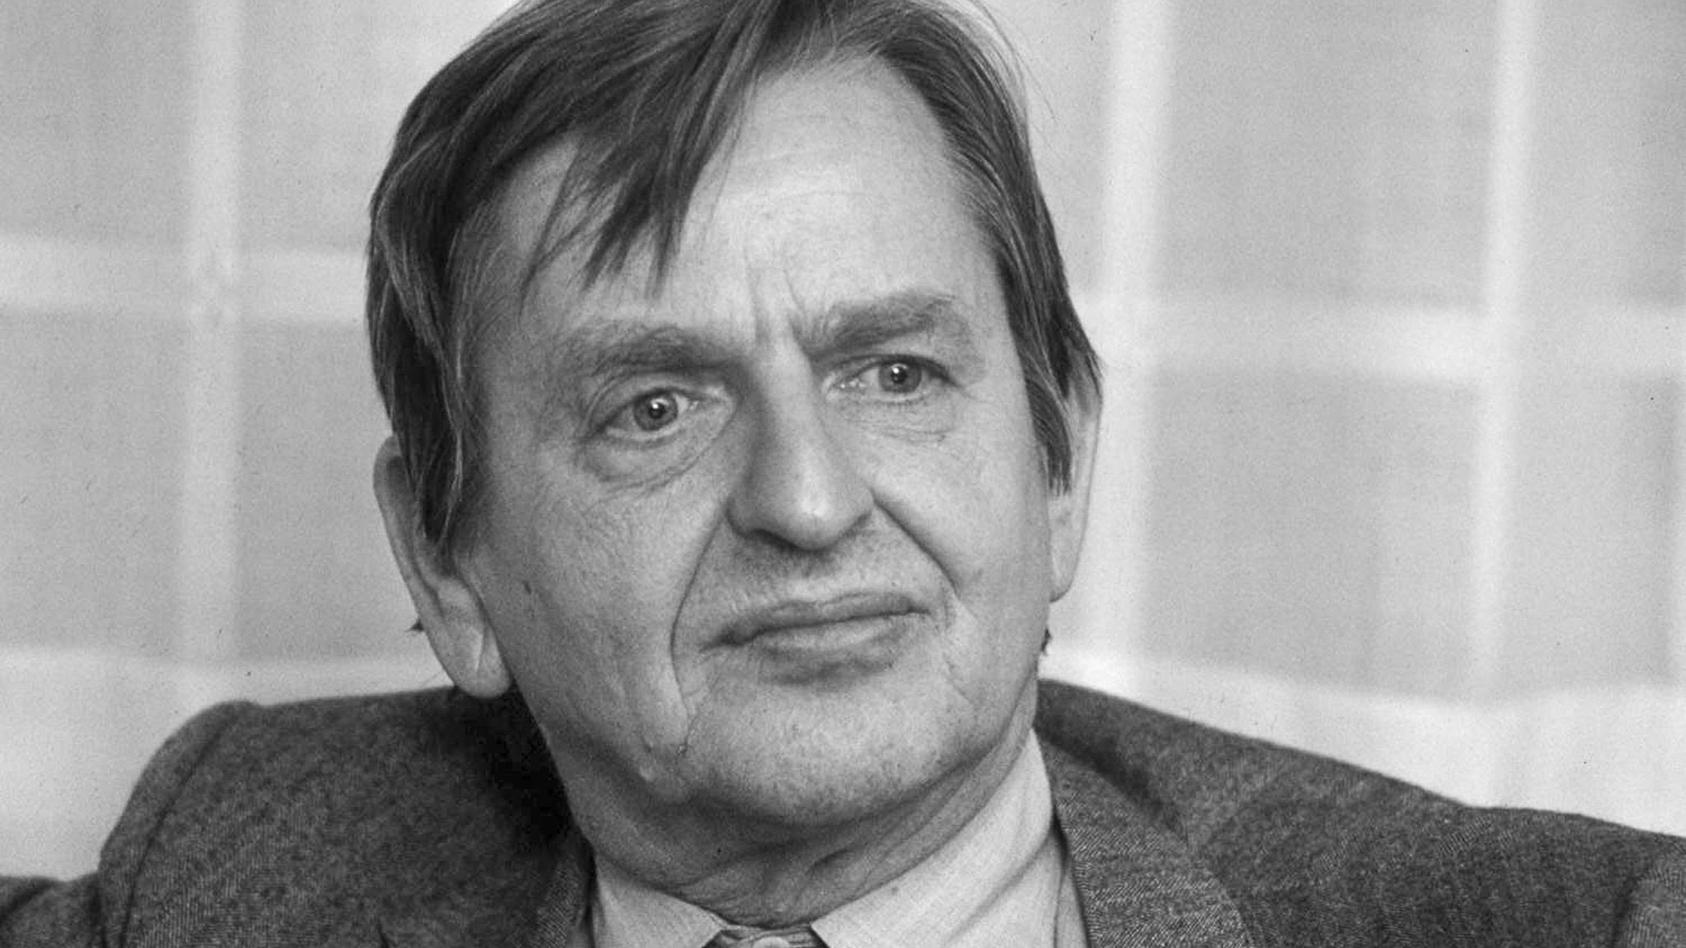 ARCHIV - 01.01.1984, Schweden, Stockholm: Olof Palme, aufgenommen 1984. Mehr als 34 Jahre nach dem bis heute unaufgeklärten Mord am schwedischen Ministerpräsidenten Olof Palme wollen die Ermittler am 10.Juni ihren Entschluss zu einer möglichen Anklag